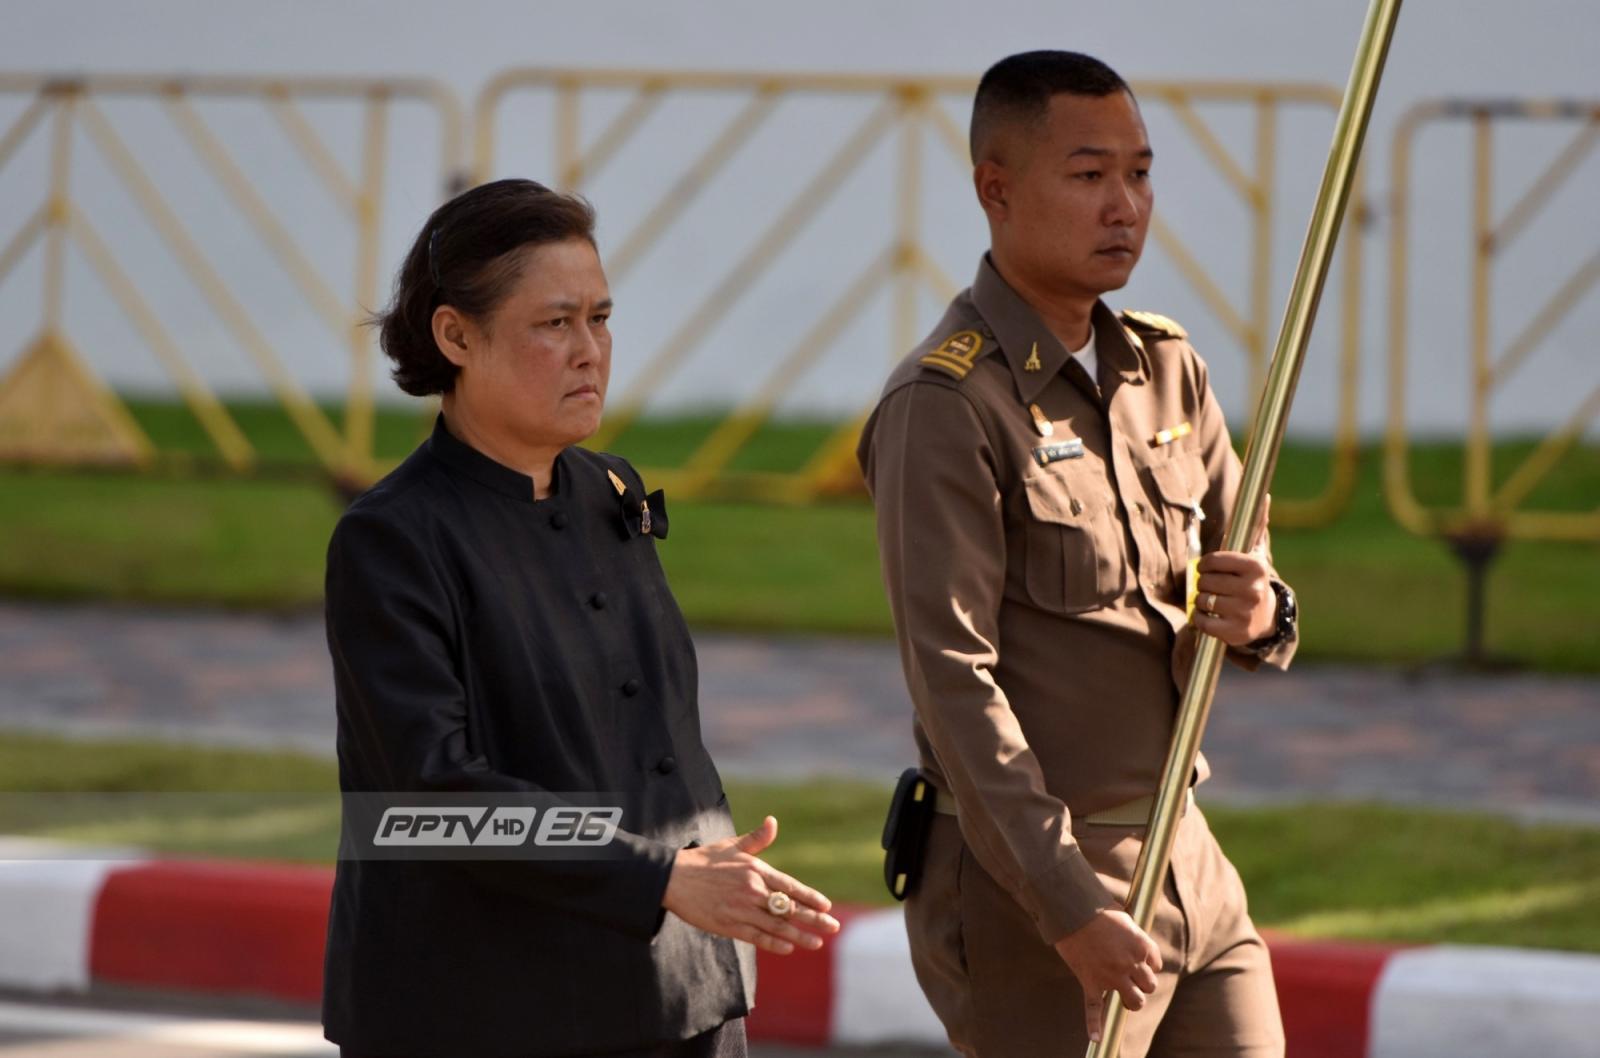 สมเด็จพระเทพฯ เสด็จร่วมซ้อมย่อยสถานที่จริงครั้งที่ 2 ริ้วขบวนฯ thaihealth